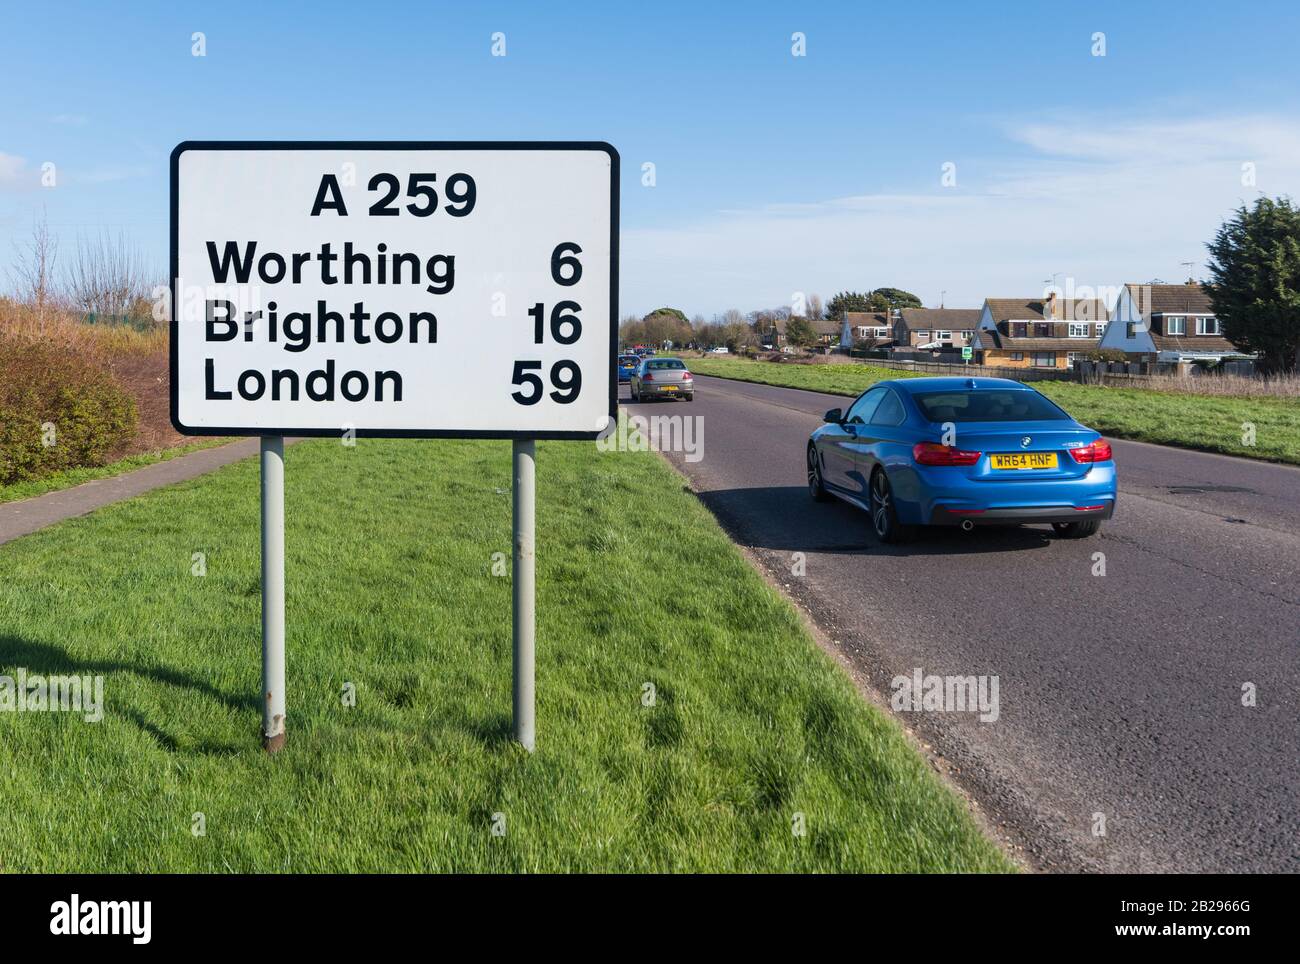 L'A259 main A route à Roundstone Bypass Road à Angmering, West Sussex, Angleterre, Royaume-Uni. Panneau de signalisation vers Londres. Route de dérivation Roundstone. Banque D'Images